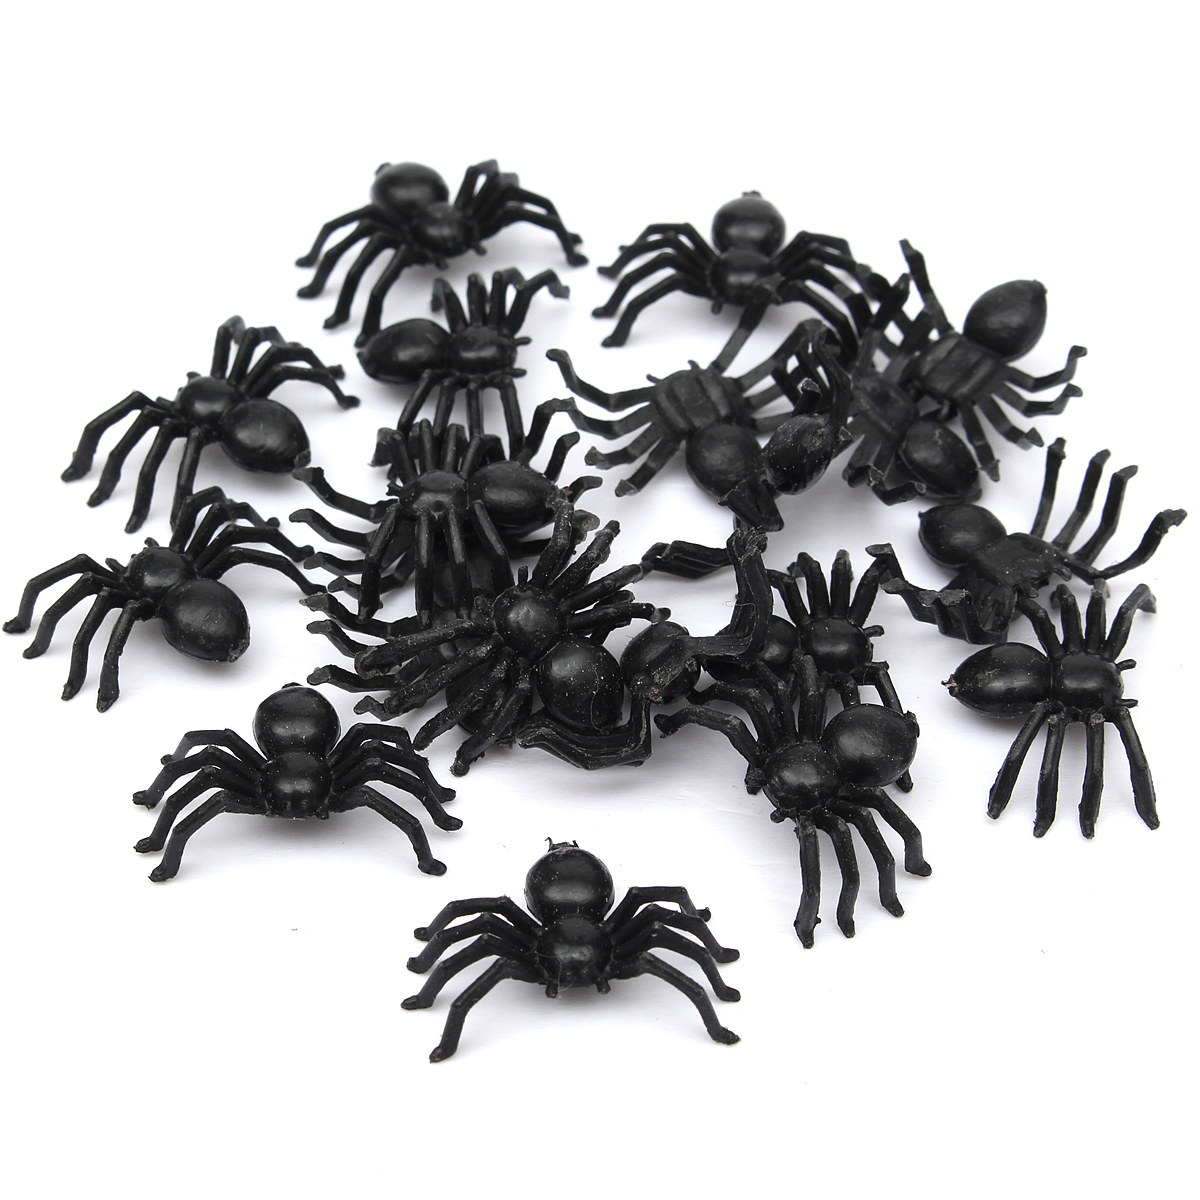 plastic spiders